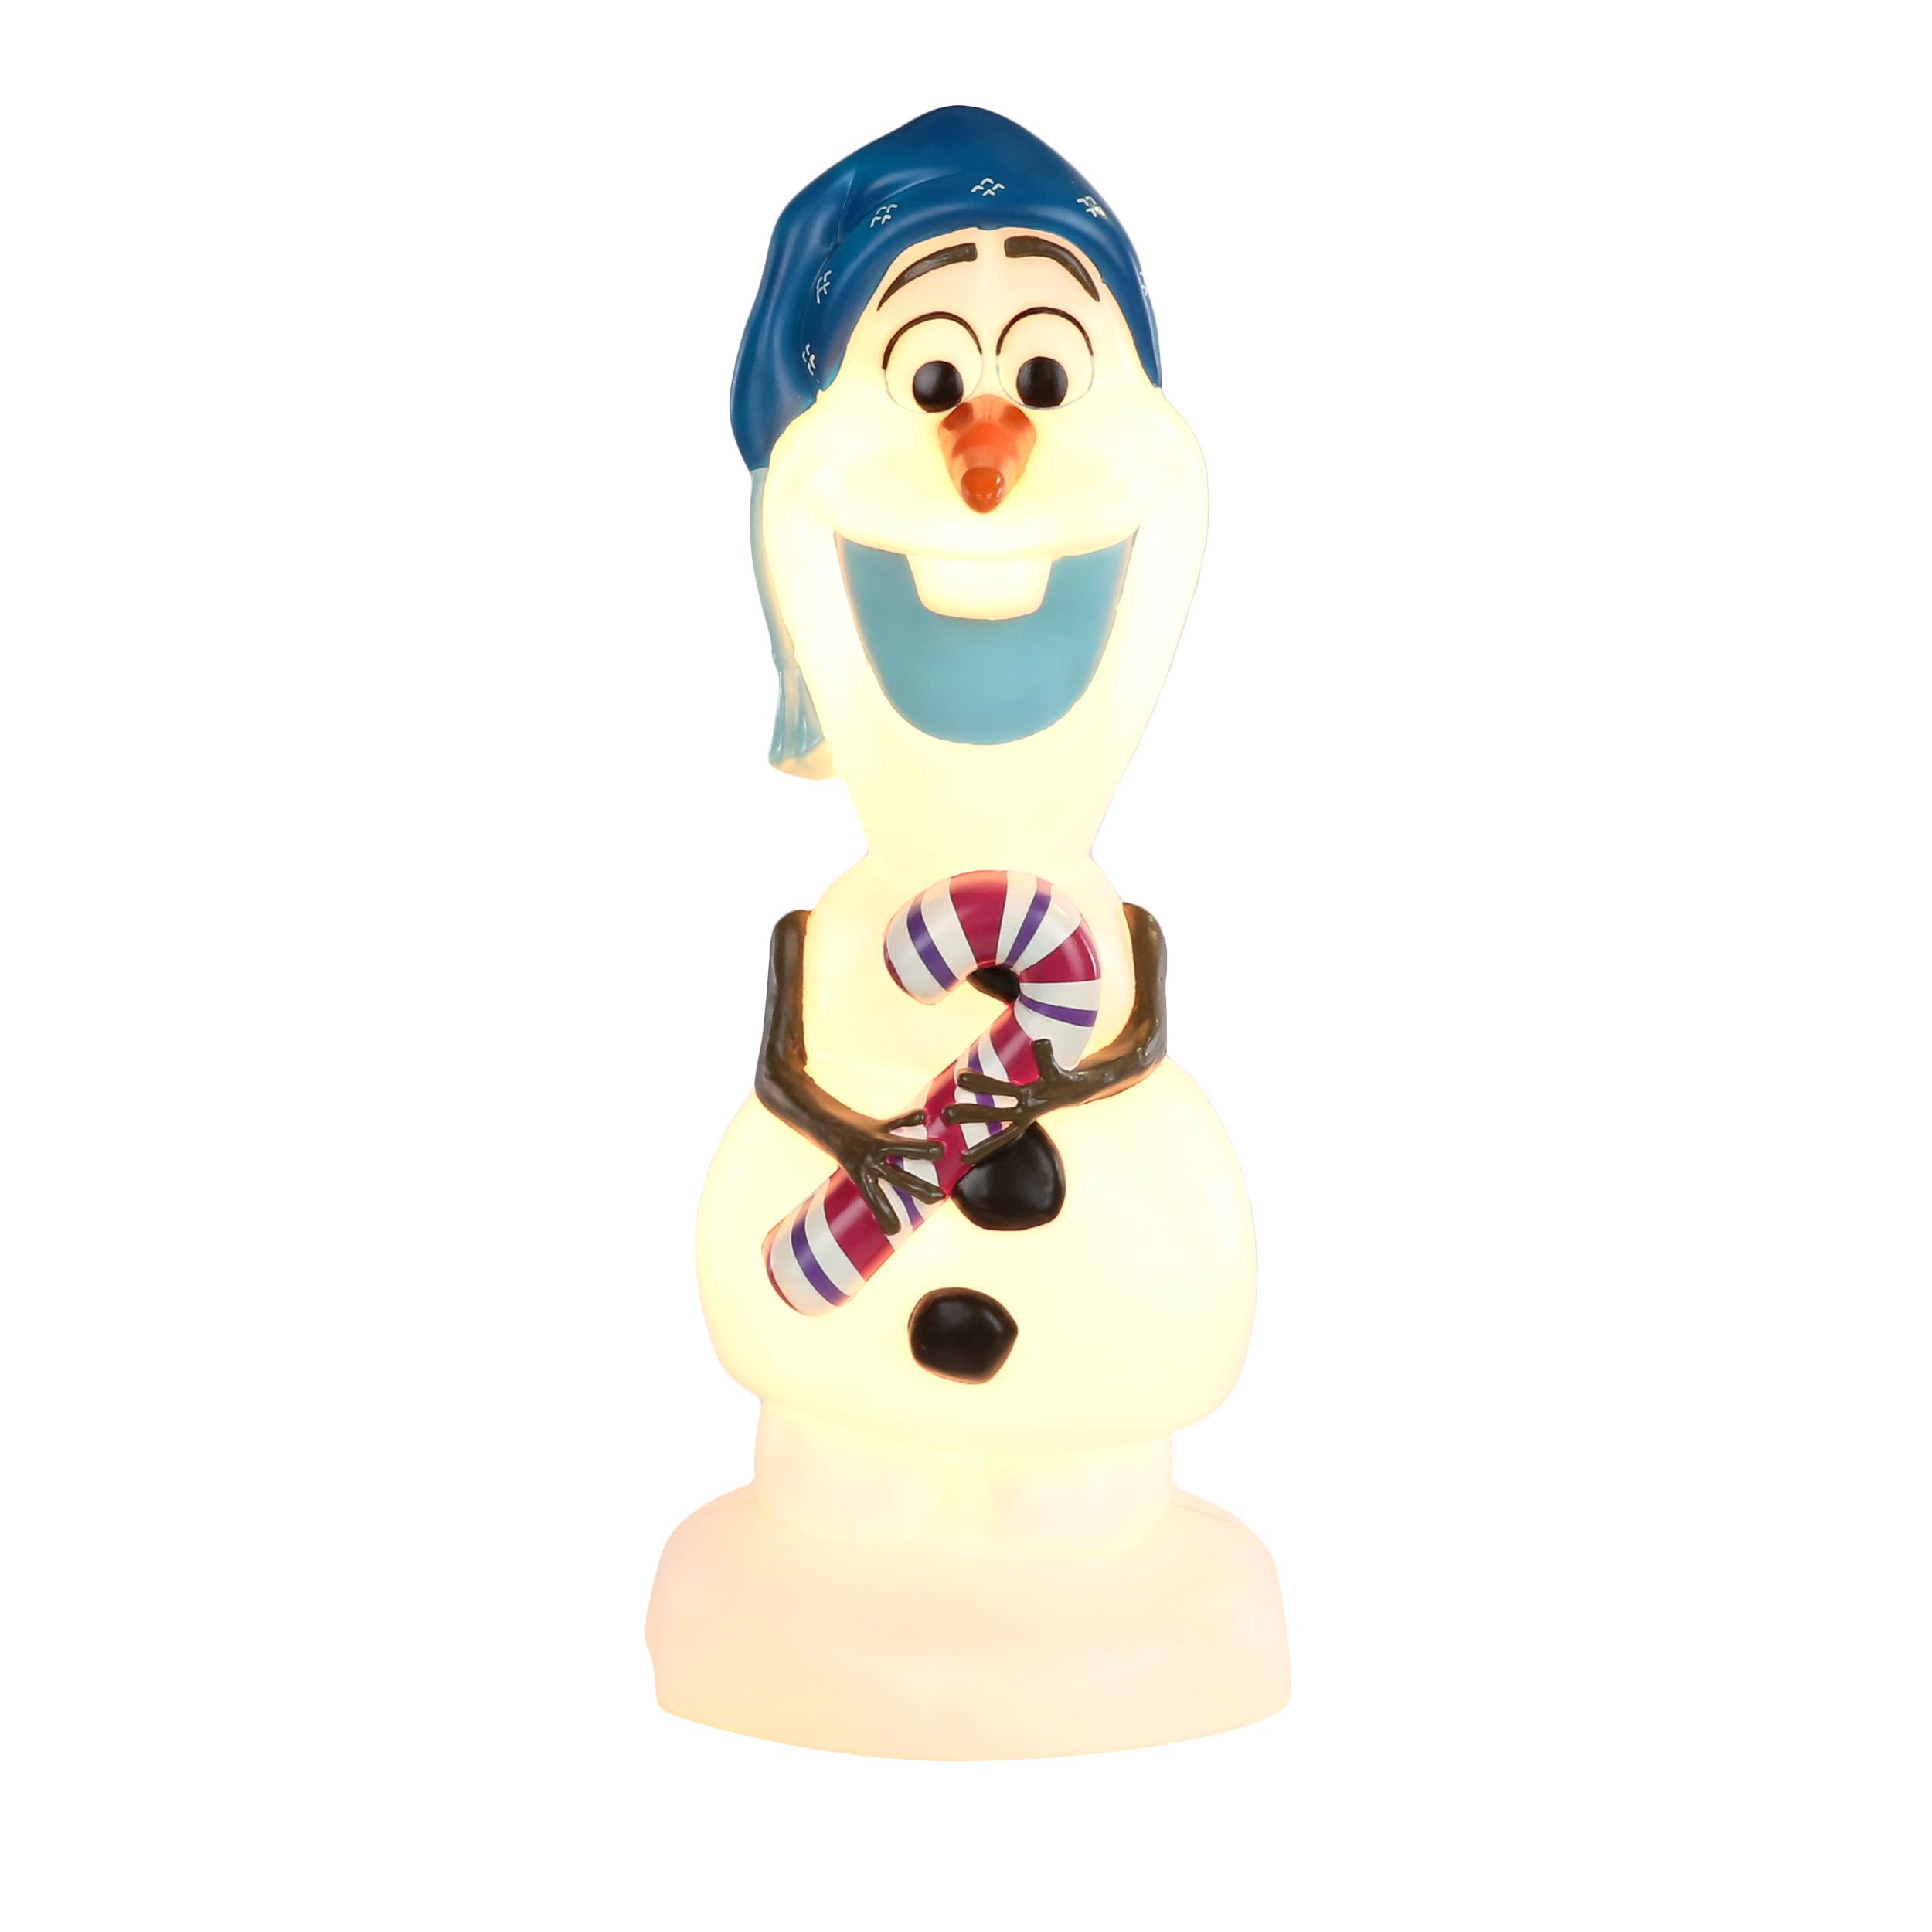 Delightful Walt Disney FROZEN Plush 7.5" Treat Bucket Snowman OLAF 